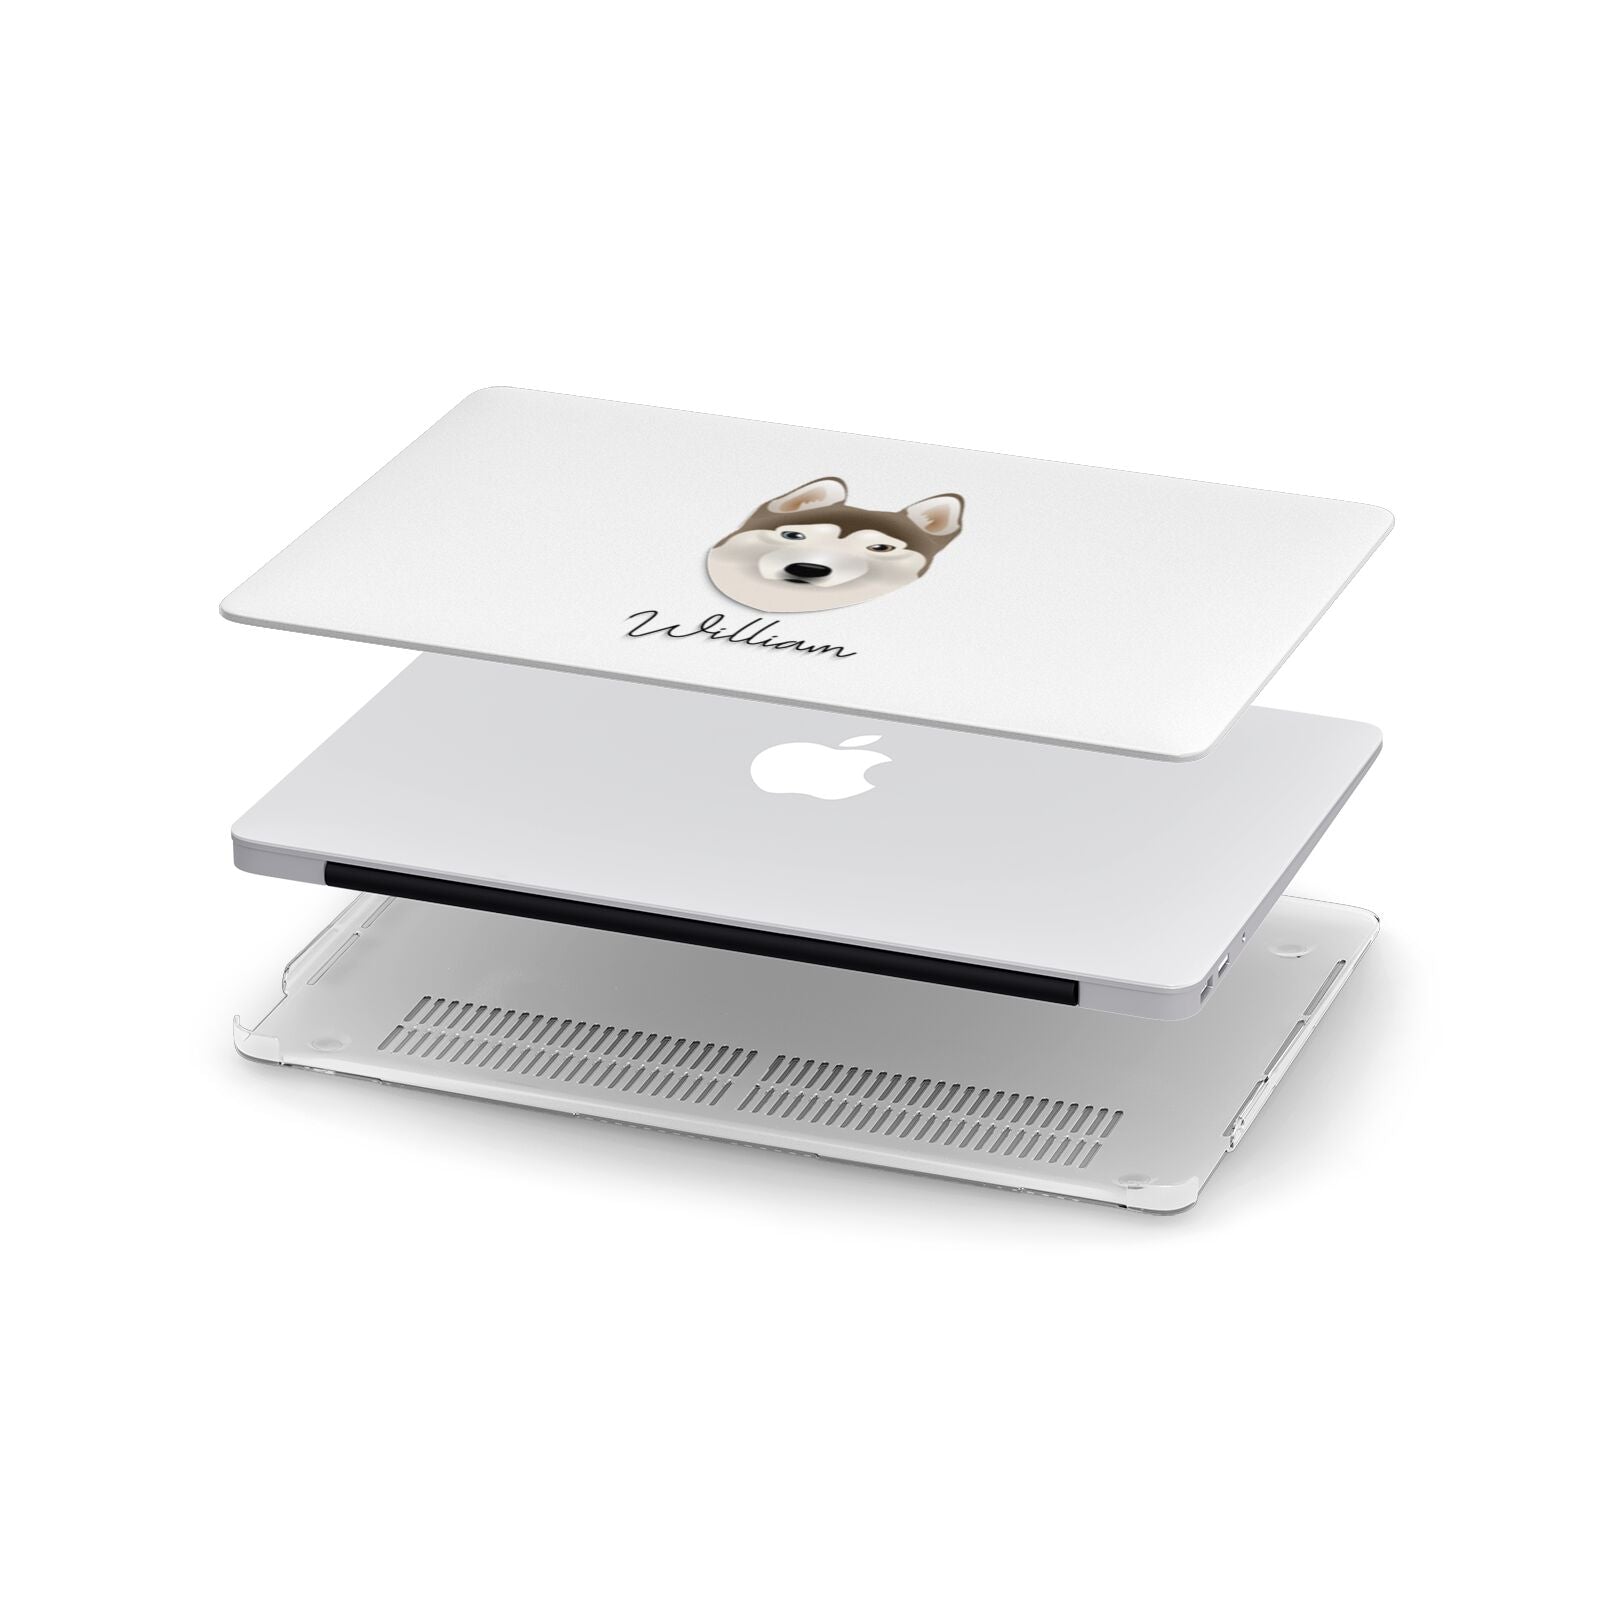 Siberian Husky Personalised Apple MacBook Case in Detail